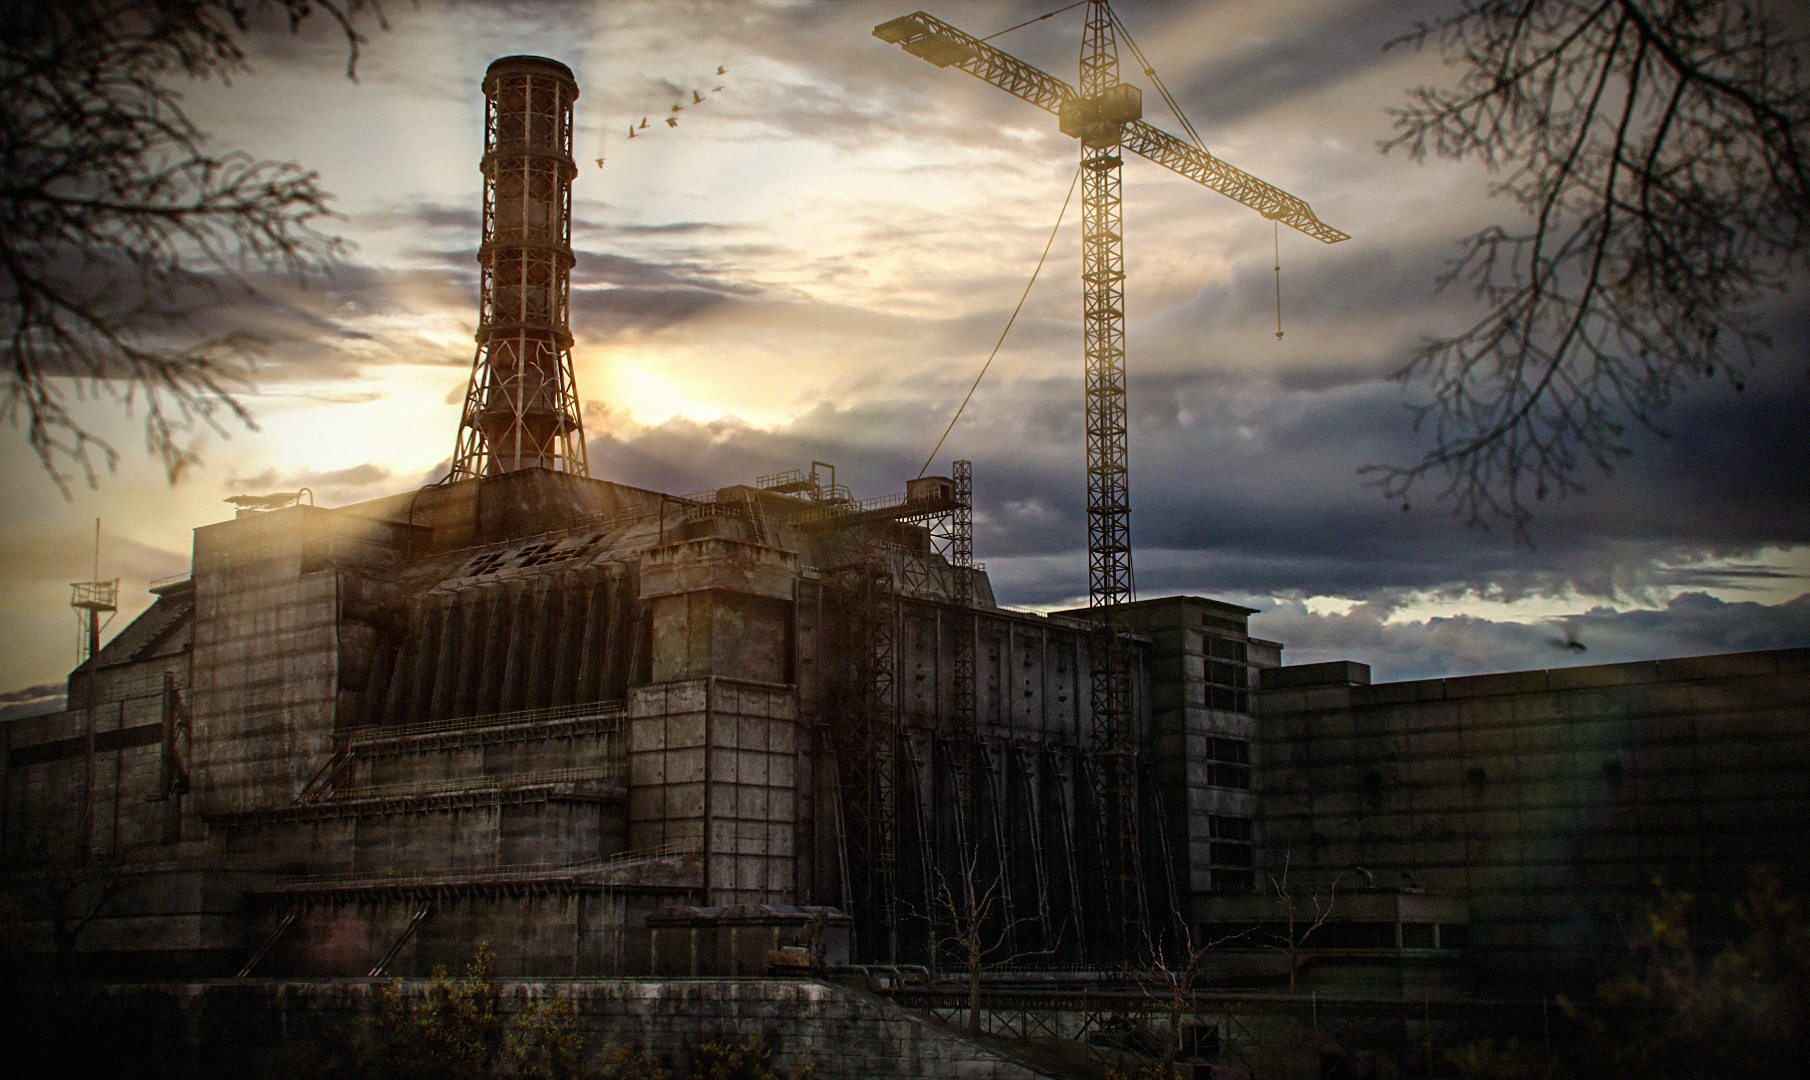 Http chernobyl. Чернобыльская АЭС сталкер фон. ЧАЭС сталкер тень Чернобыля. Сталкер зона ЧАЭС арт. Сталкер Зов Припяти ЧАЭС.